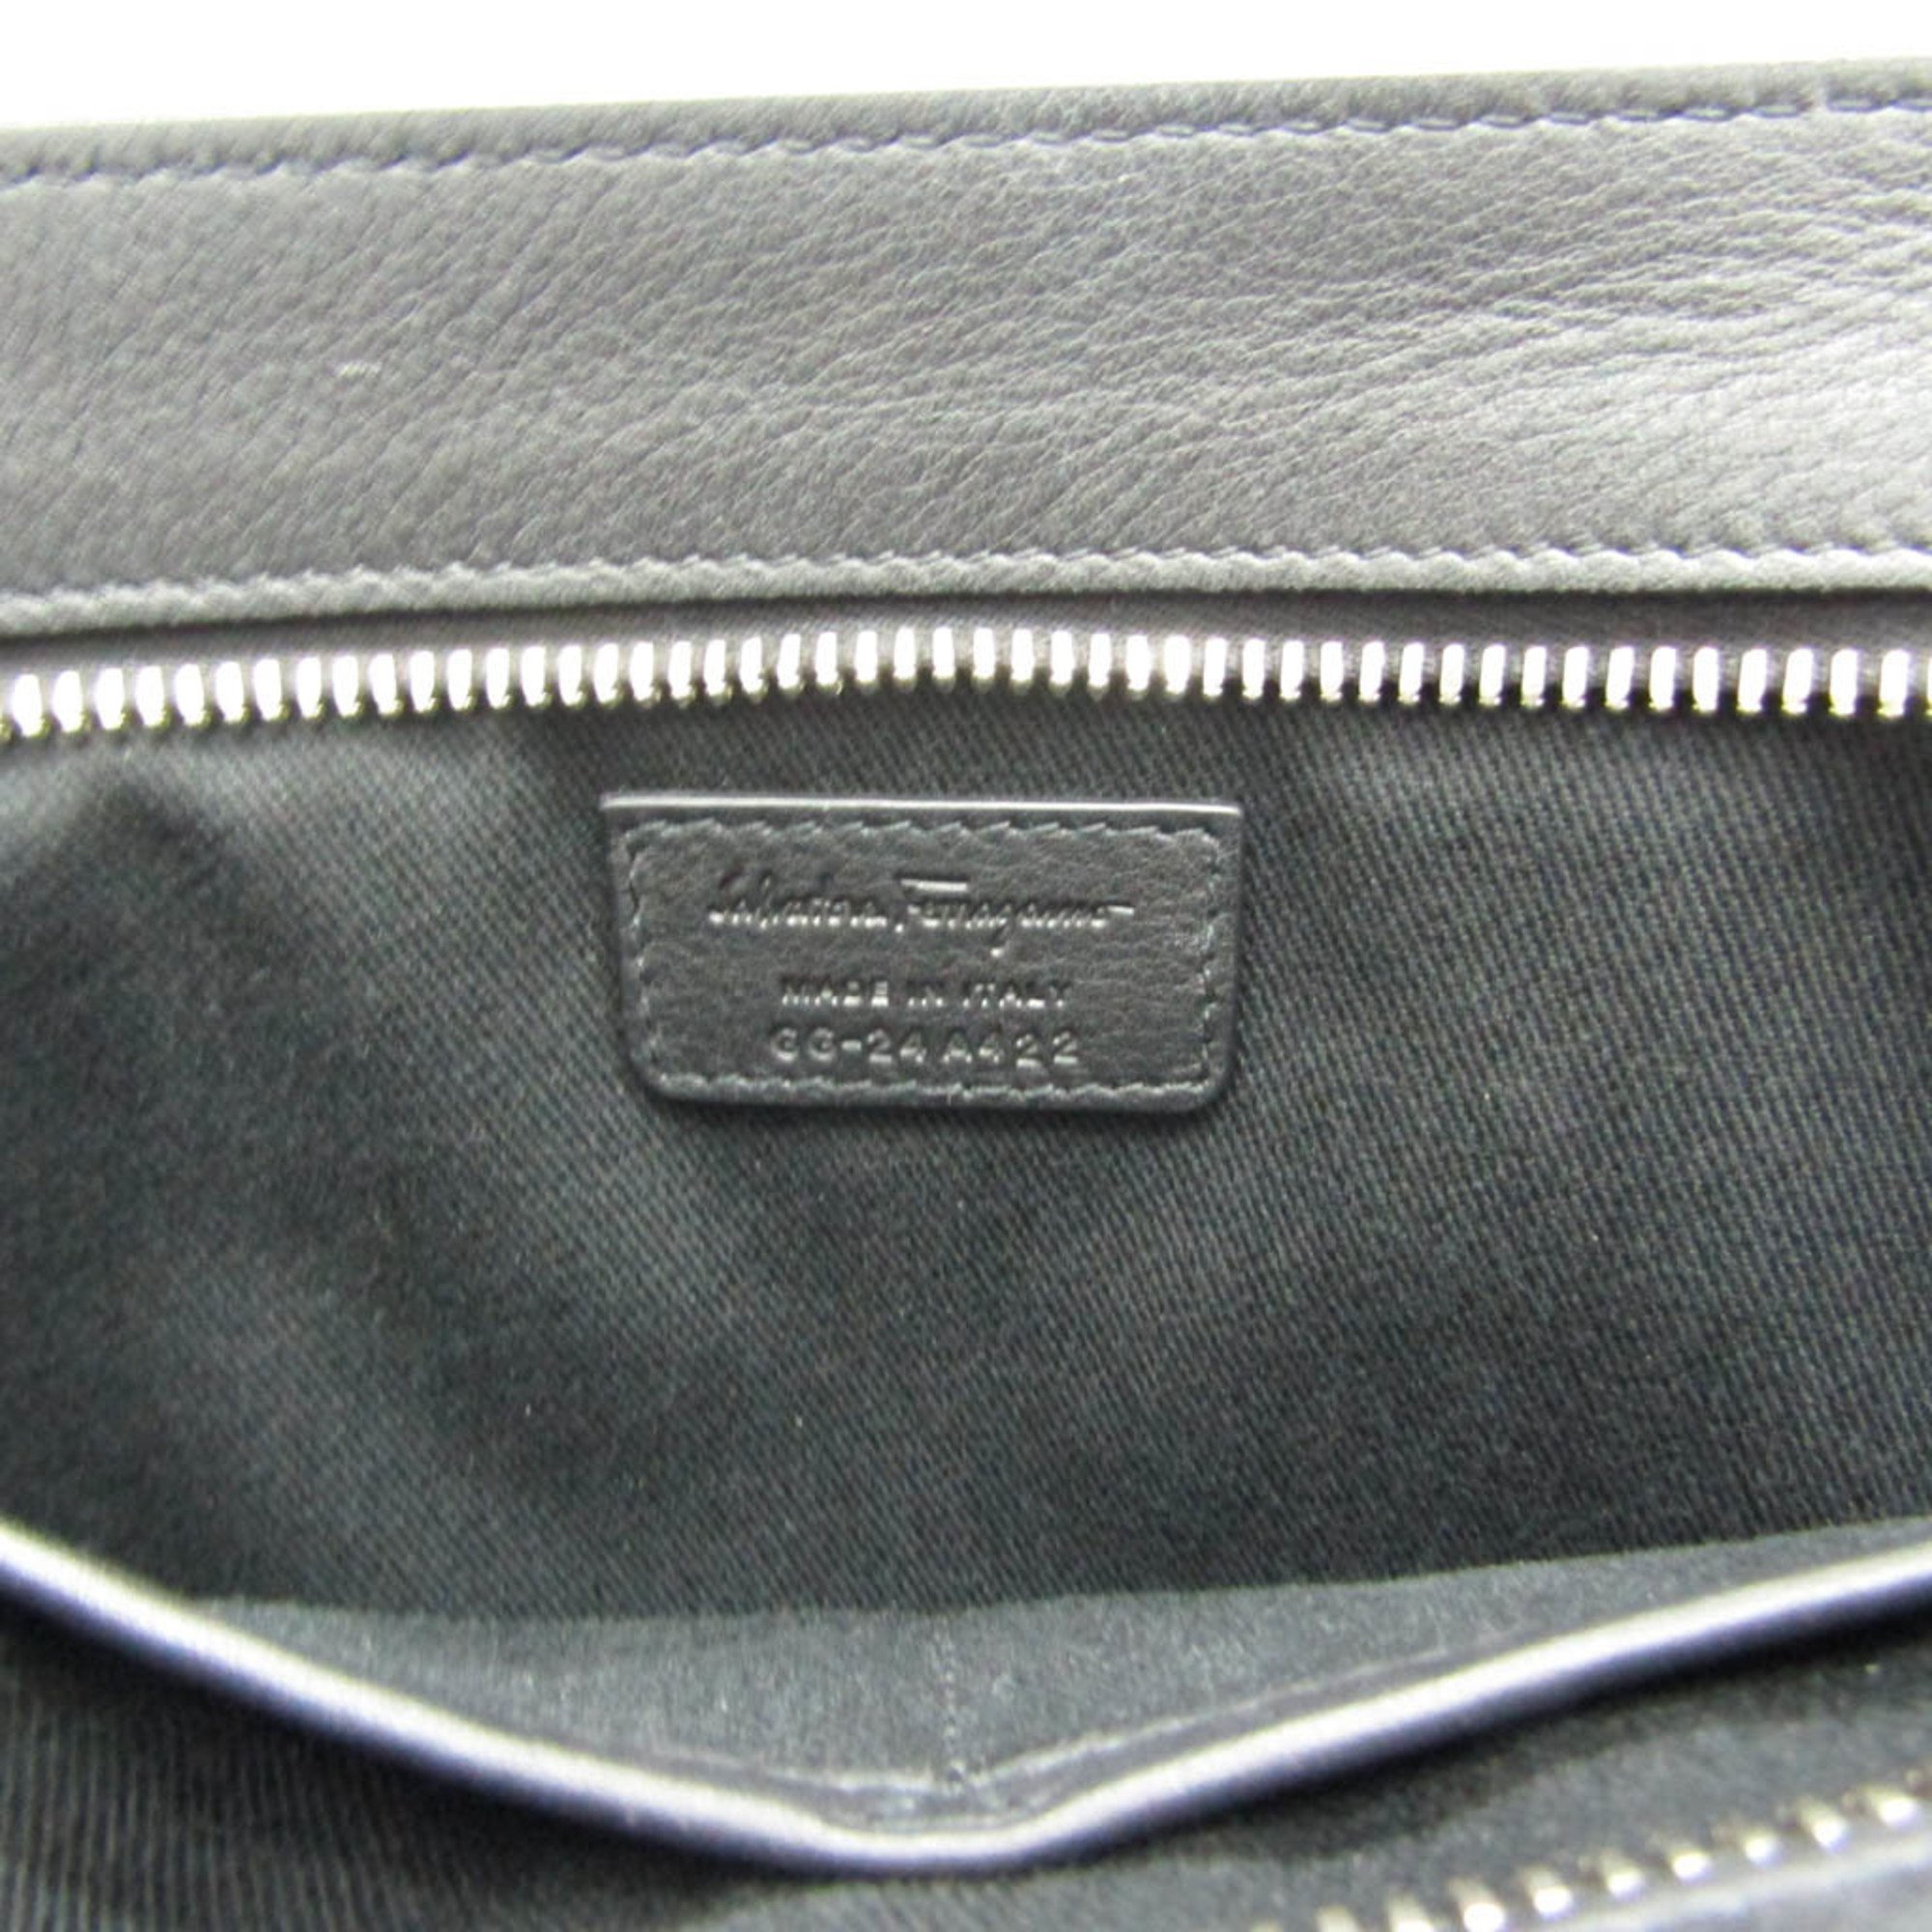 Salvatore Ferragamo Gancini GG-24 A422 Men's Leather Clutch Bag Black